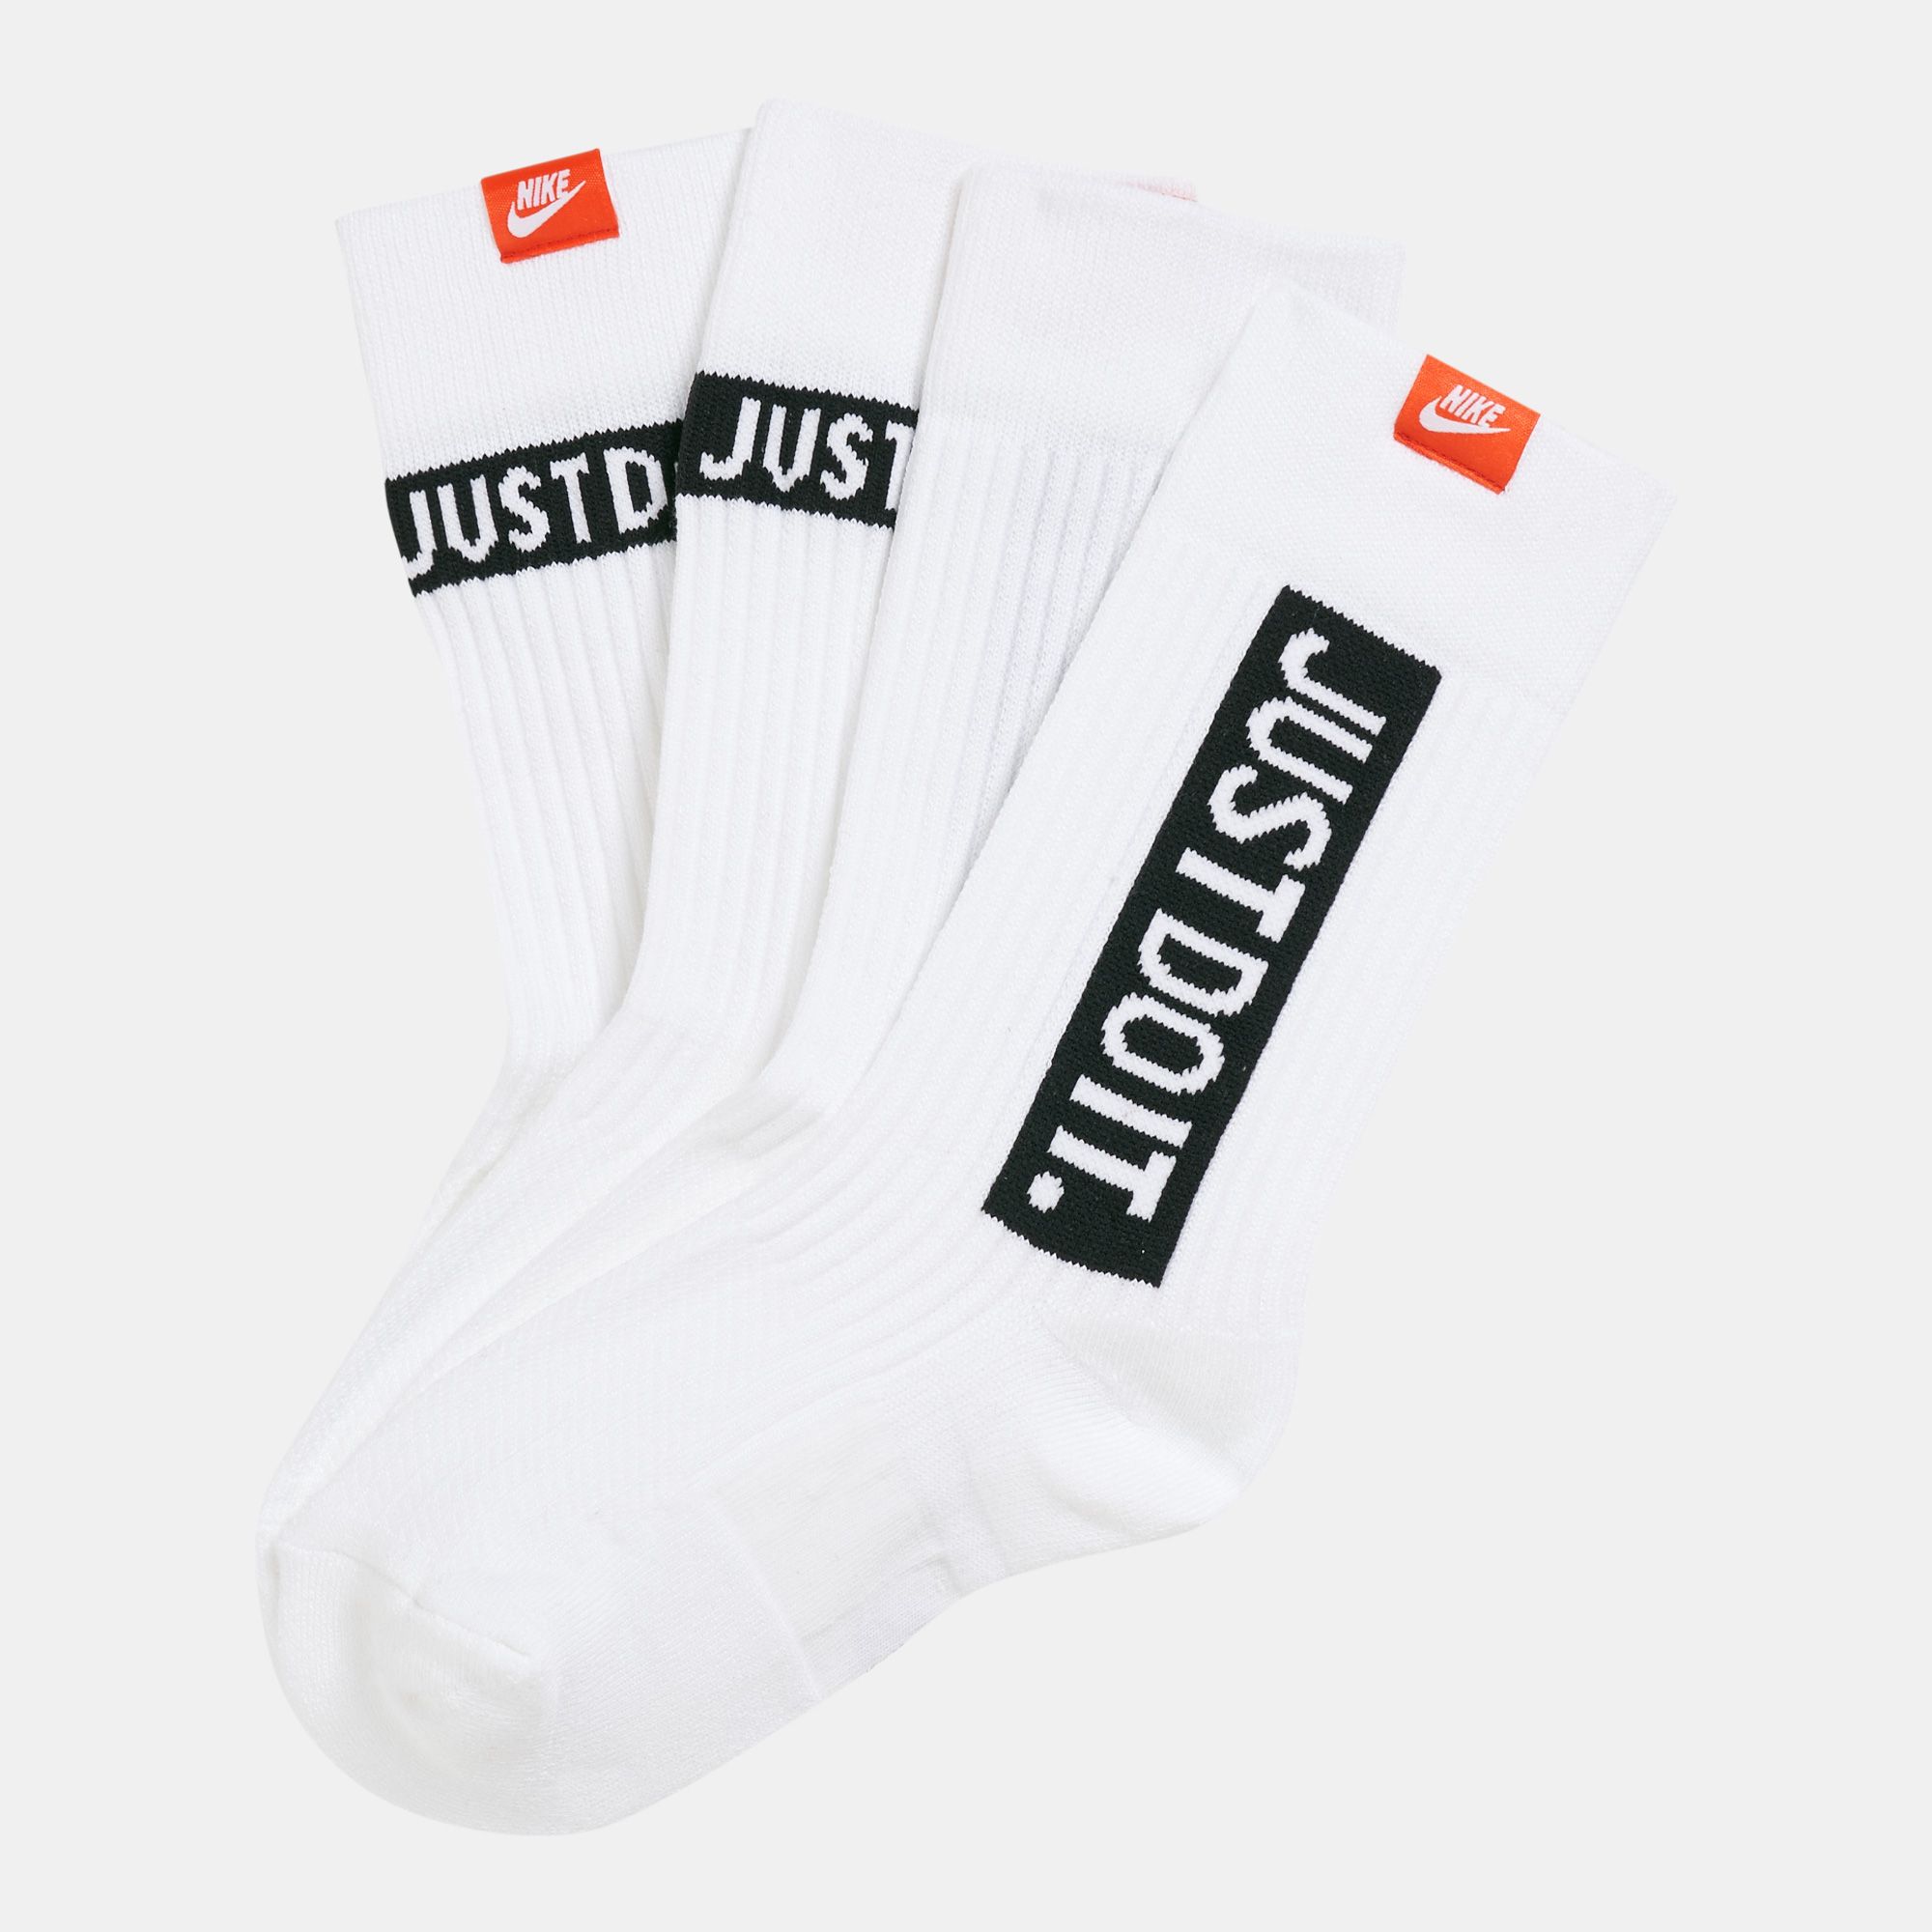 Just socks